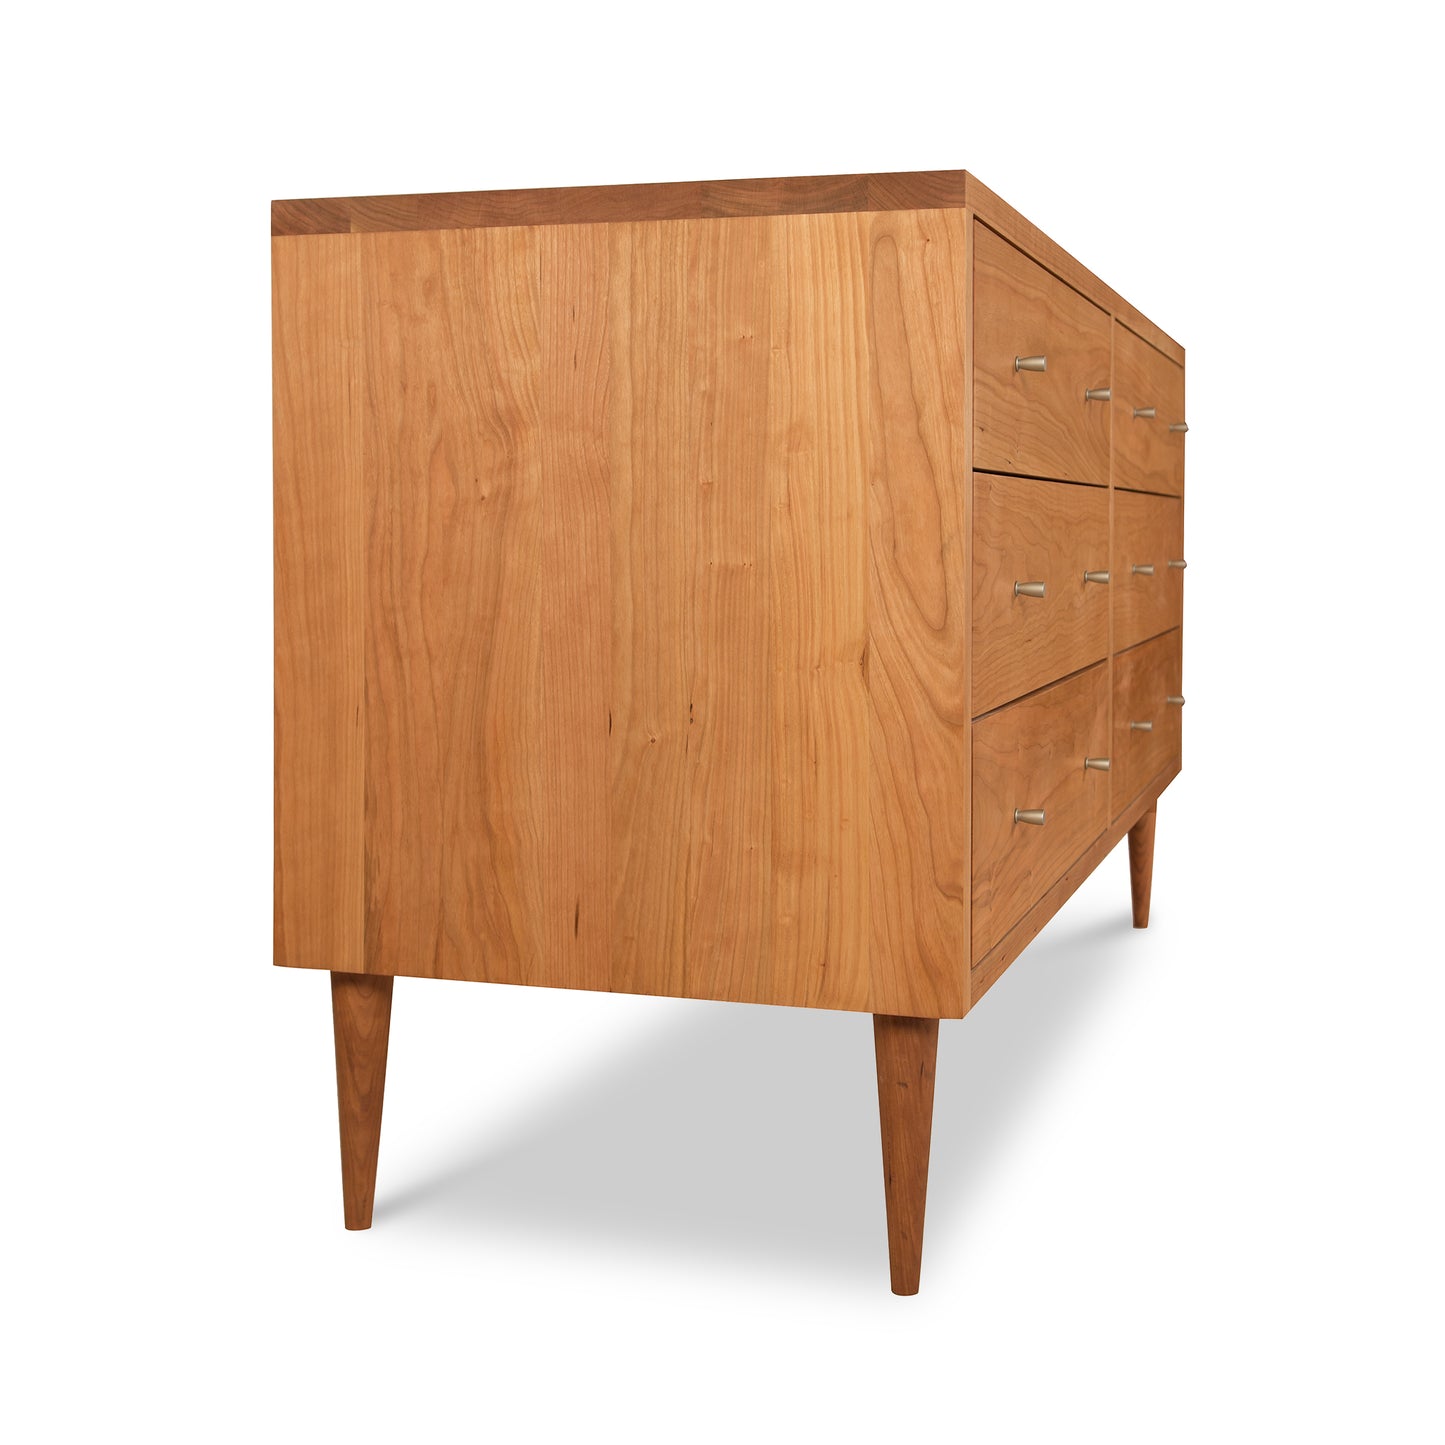 A wooden Vermont Furniture Designs Larssen 6-Drawer Dresser, presented against a white background.